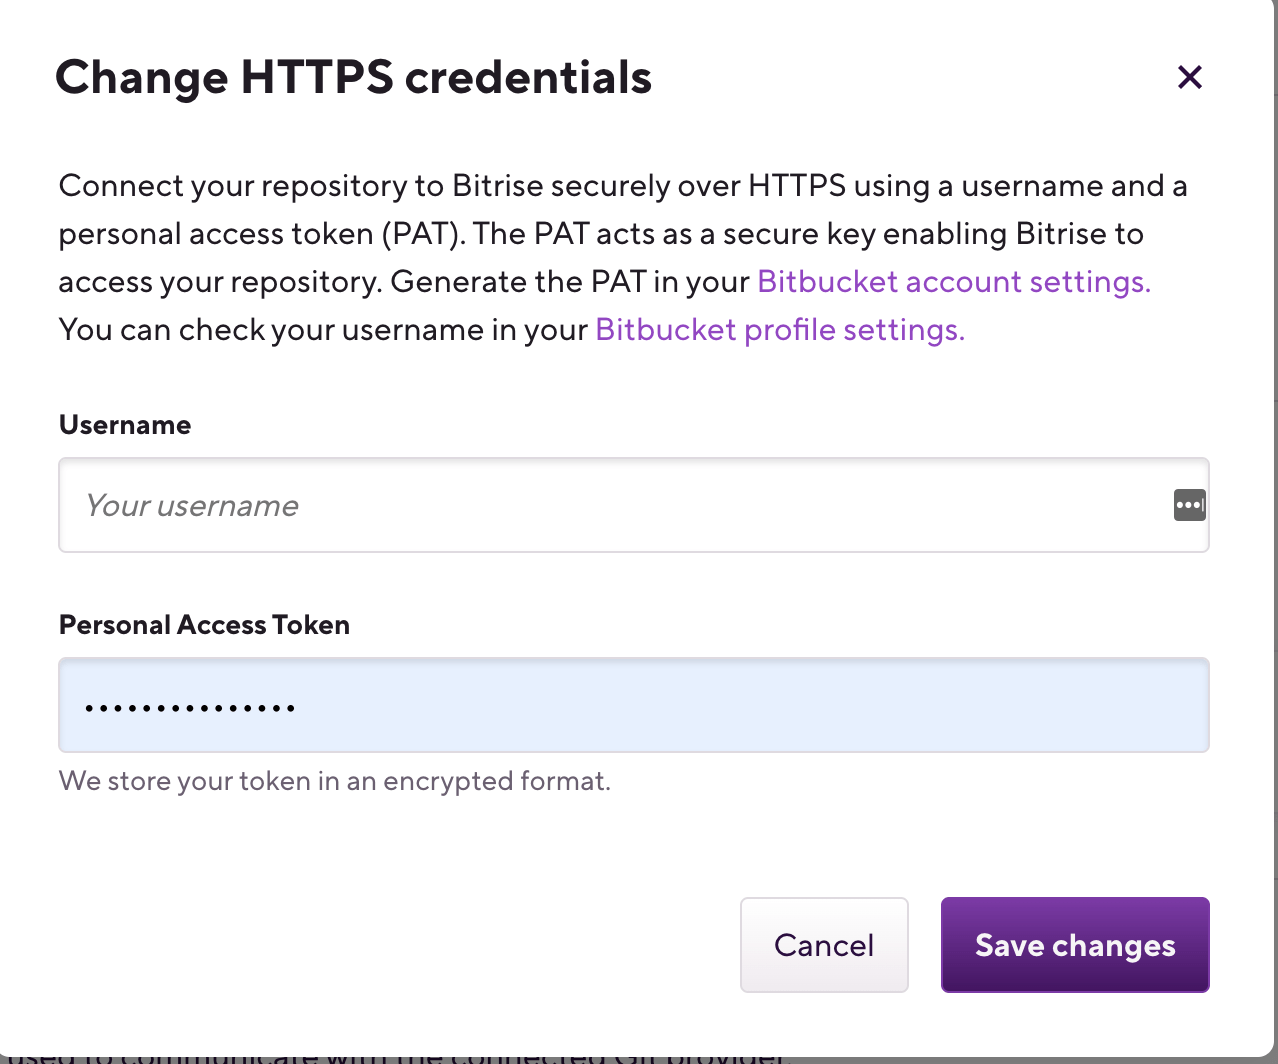 change-https-credentials-popup.png